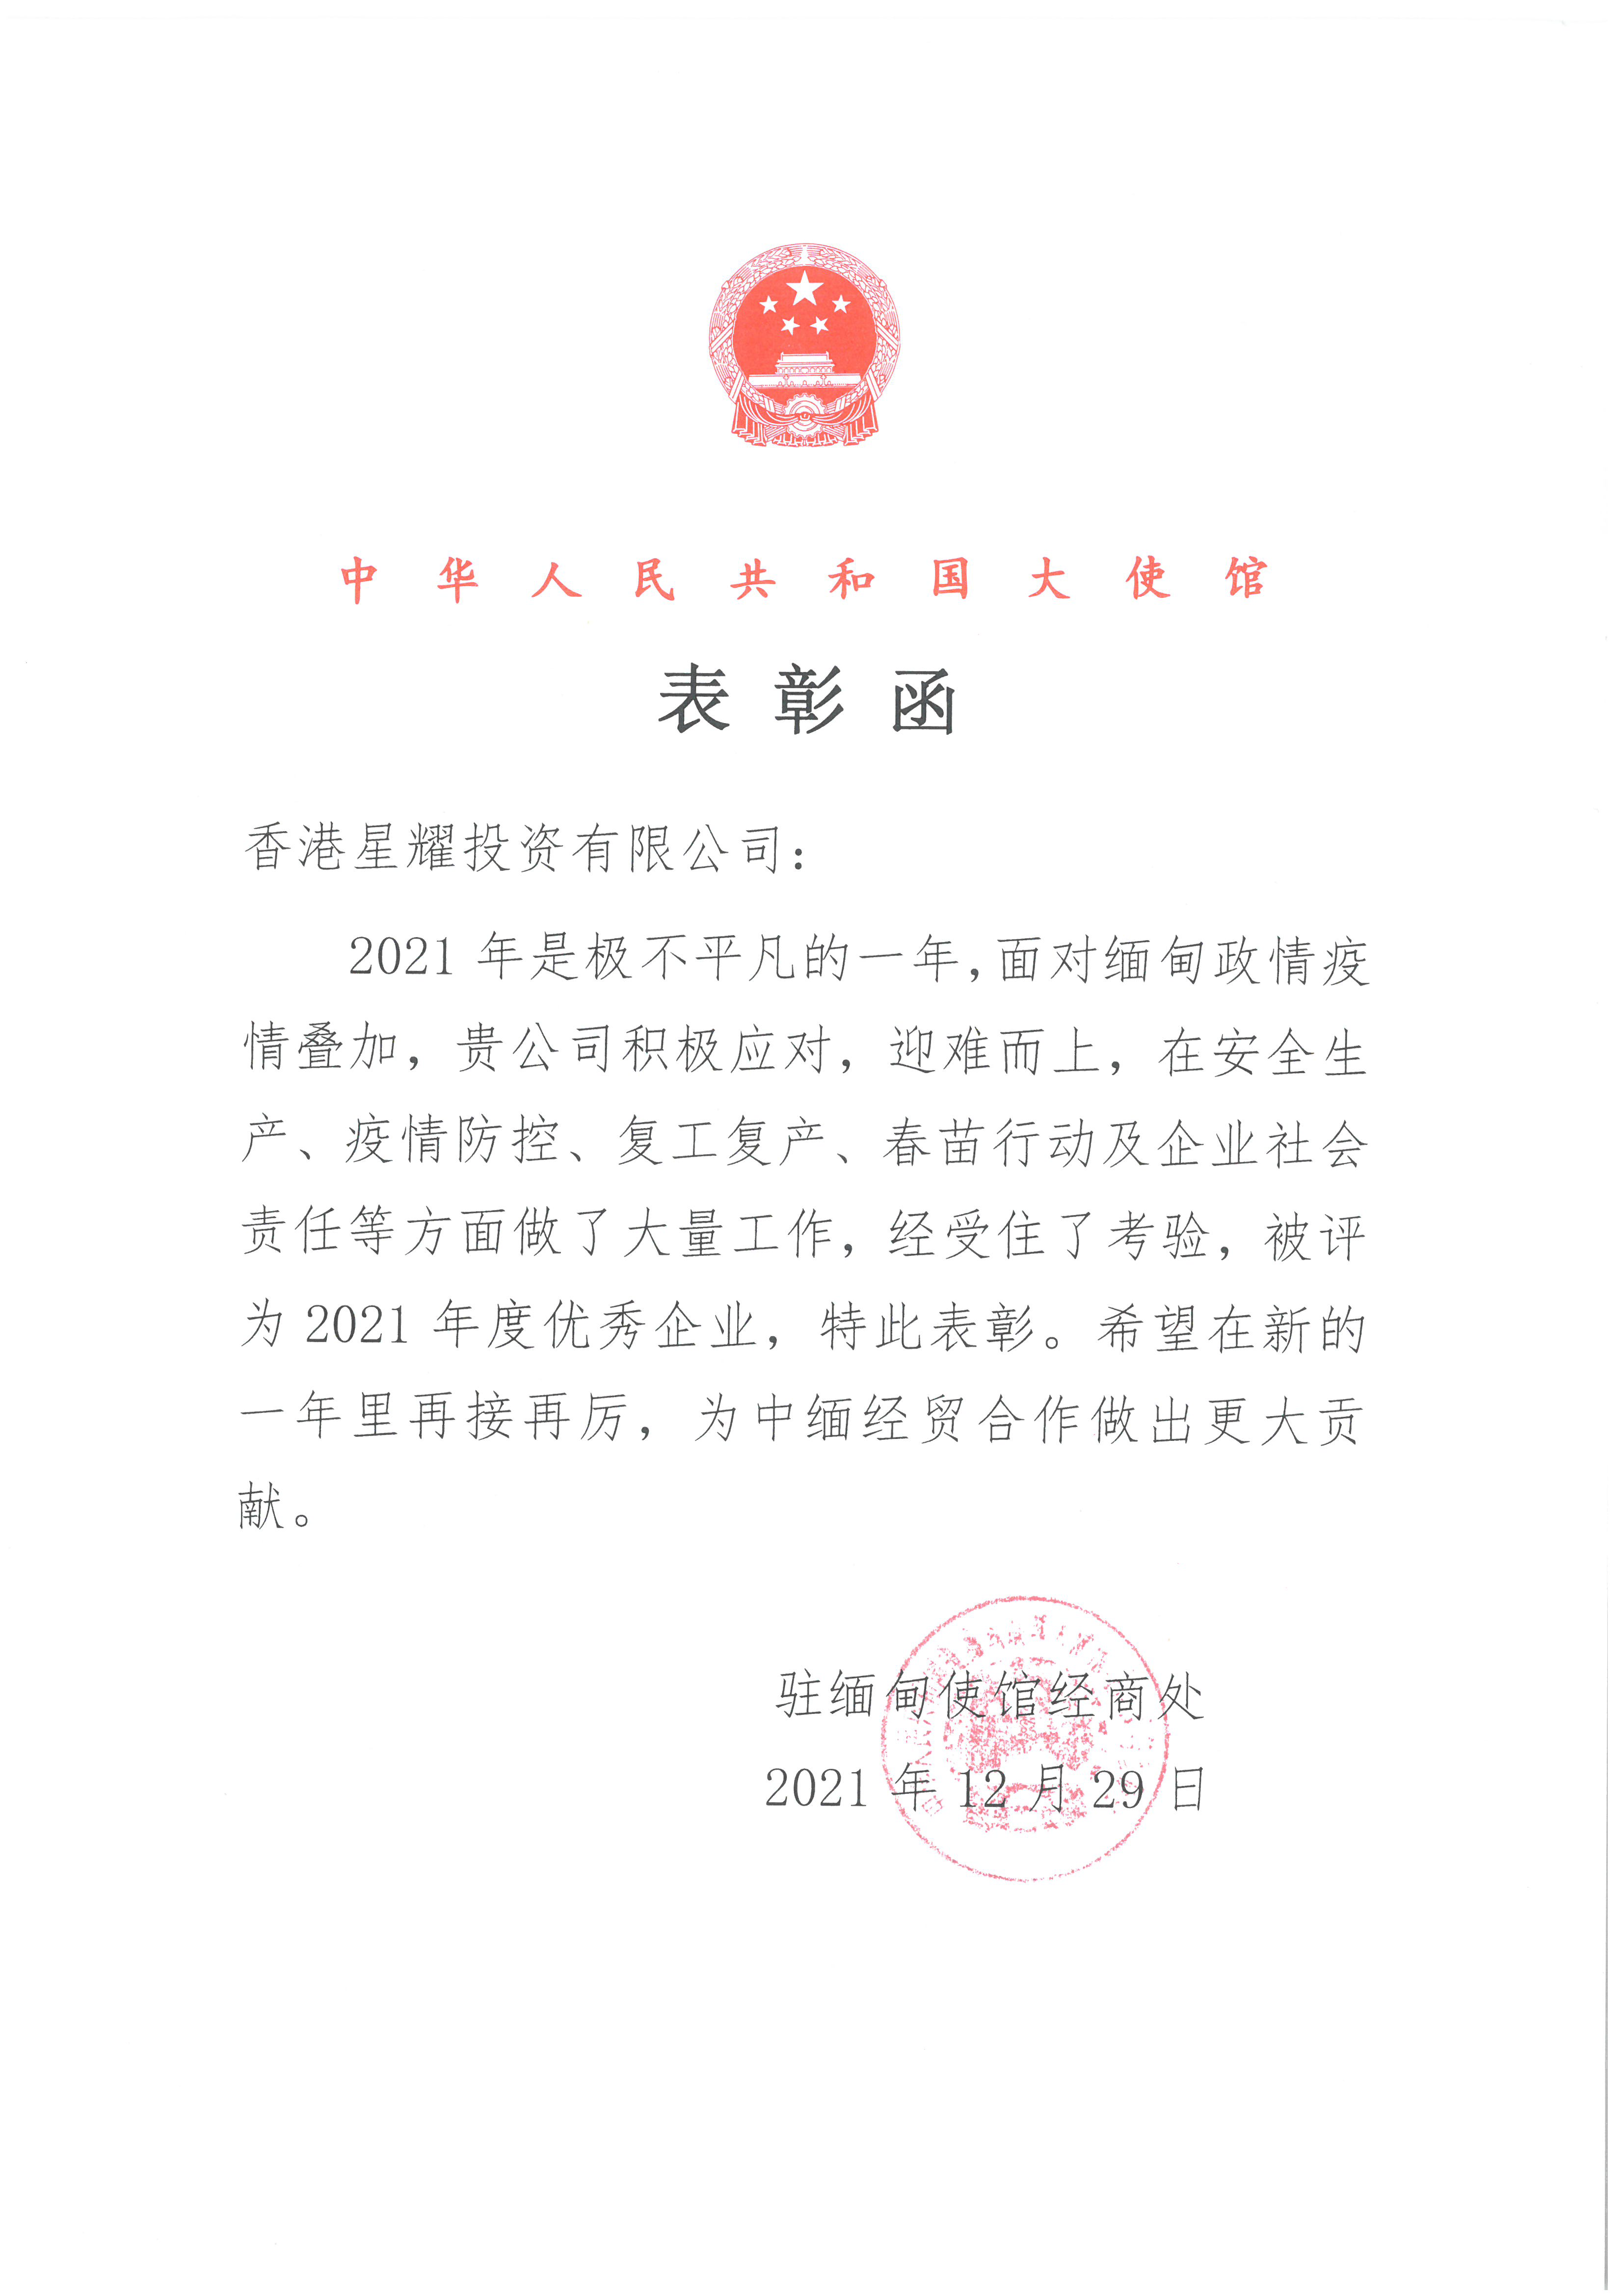 中国驻缅甸大使馆表彰函、“2021年度优秀企业”